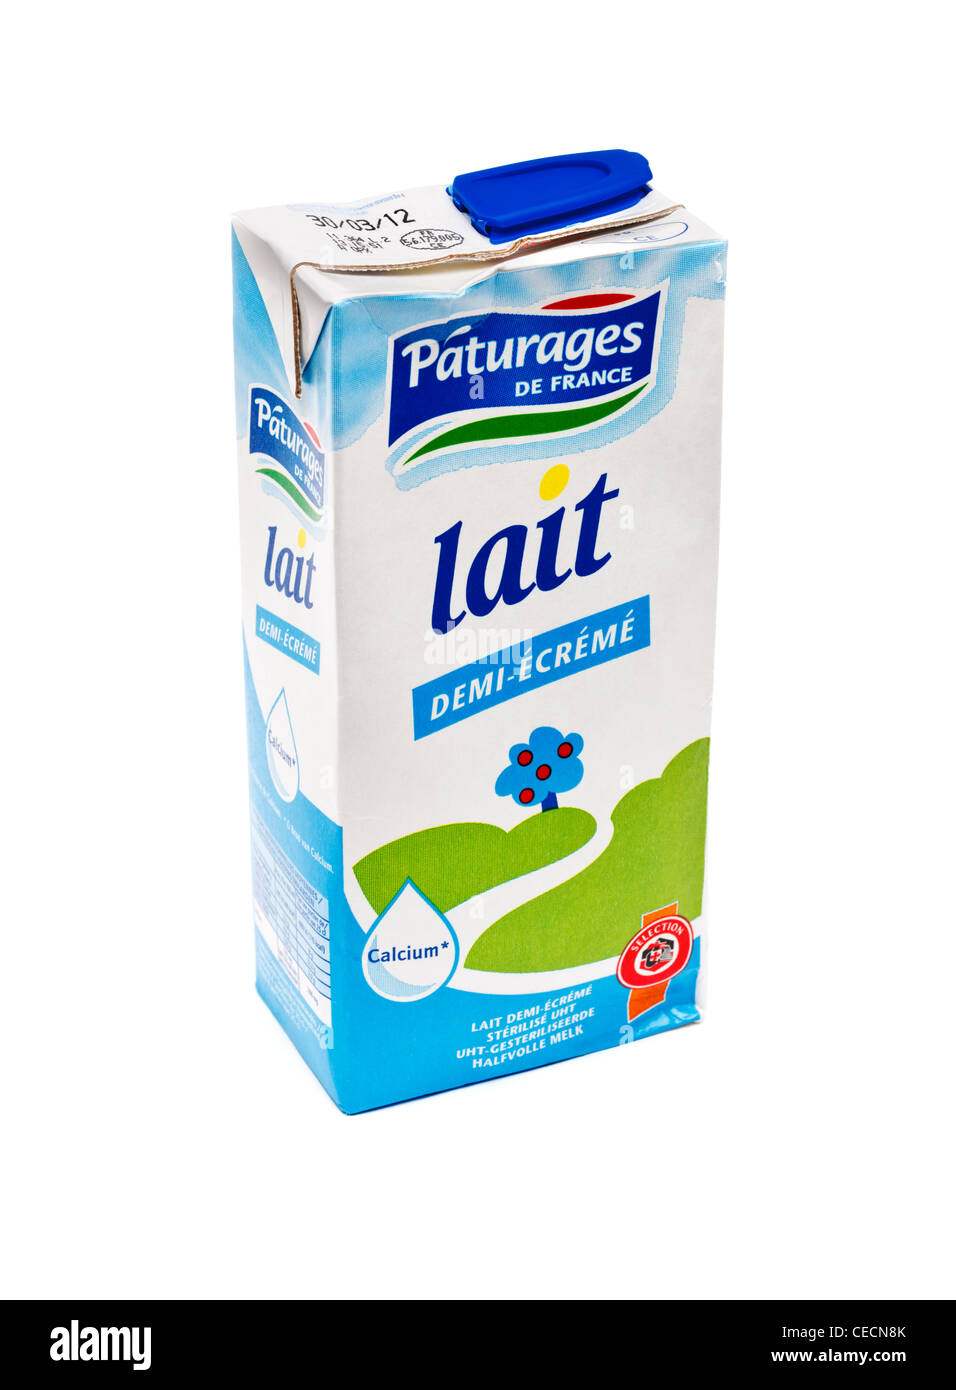 Carton de lait pasteurisé français - la moitié - crème sur fond blanc Banque D'Images